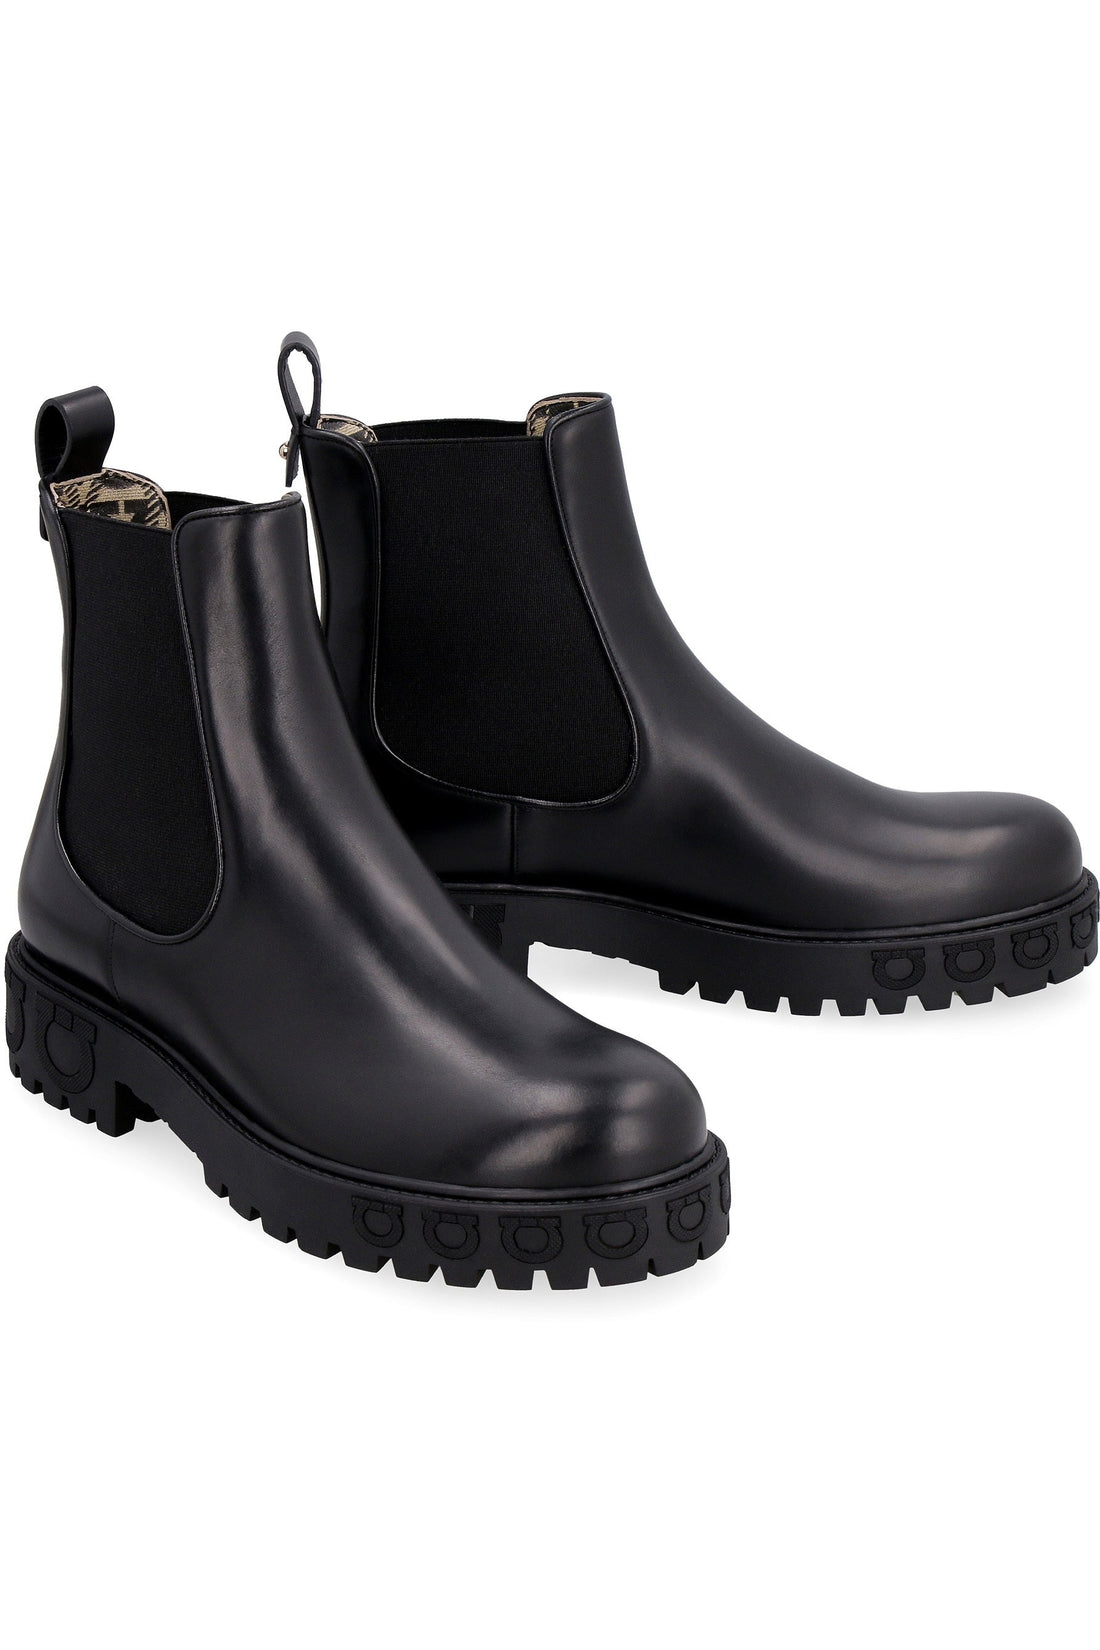 FERRAGAMO-OUTLET-SALE-Leather Chelsea boots-ARCHIVIST